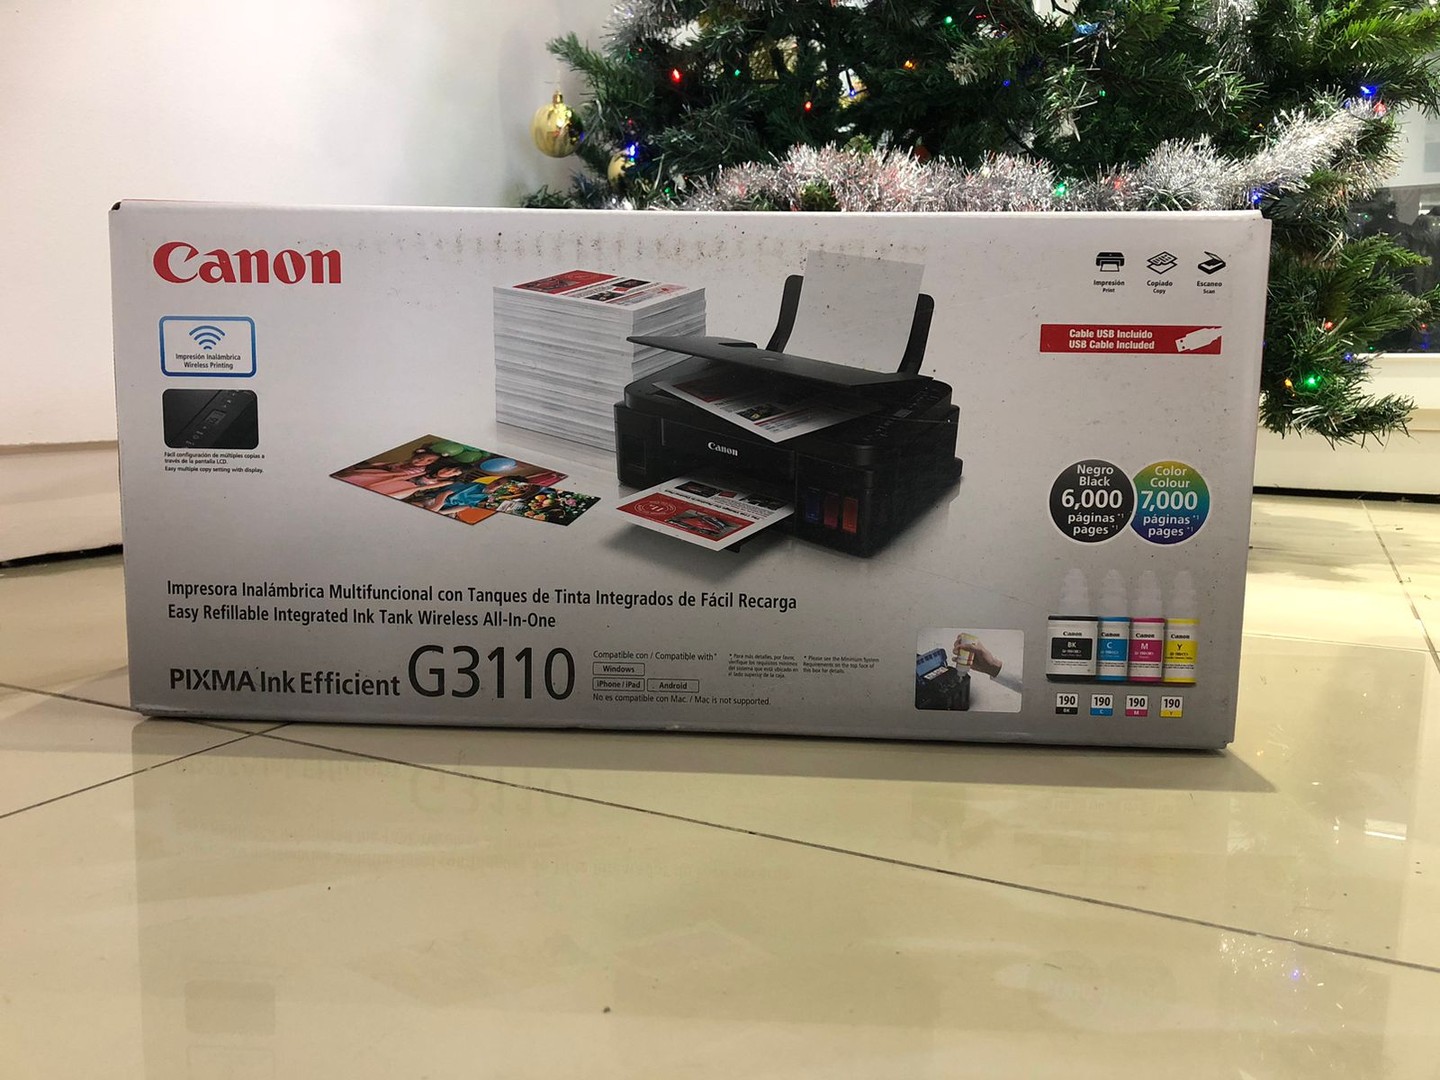 impresoras y scanners - Impresora Canon G3110 Multifuncional a Wifi Nueva y Sellada, Factura y Garantia